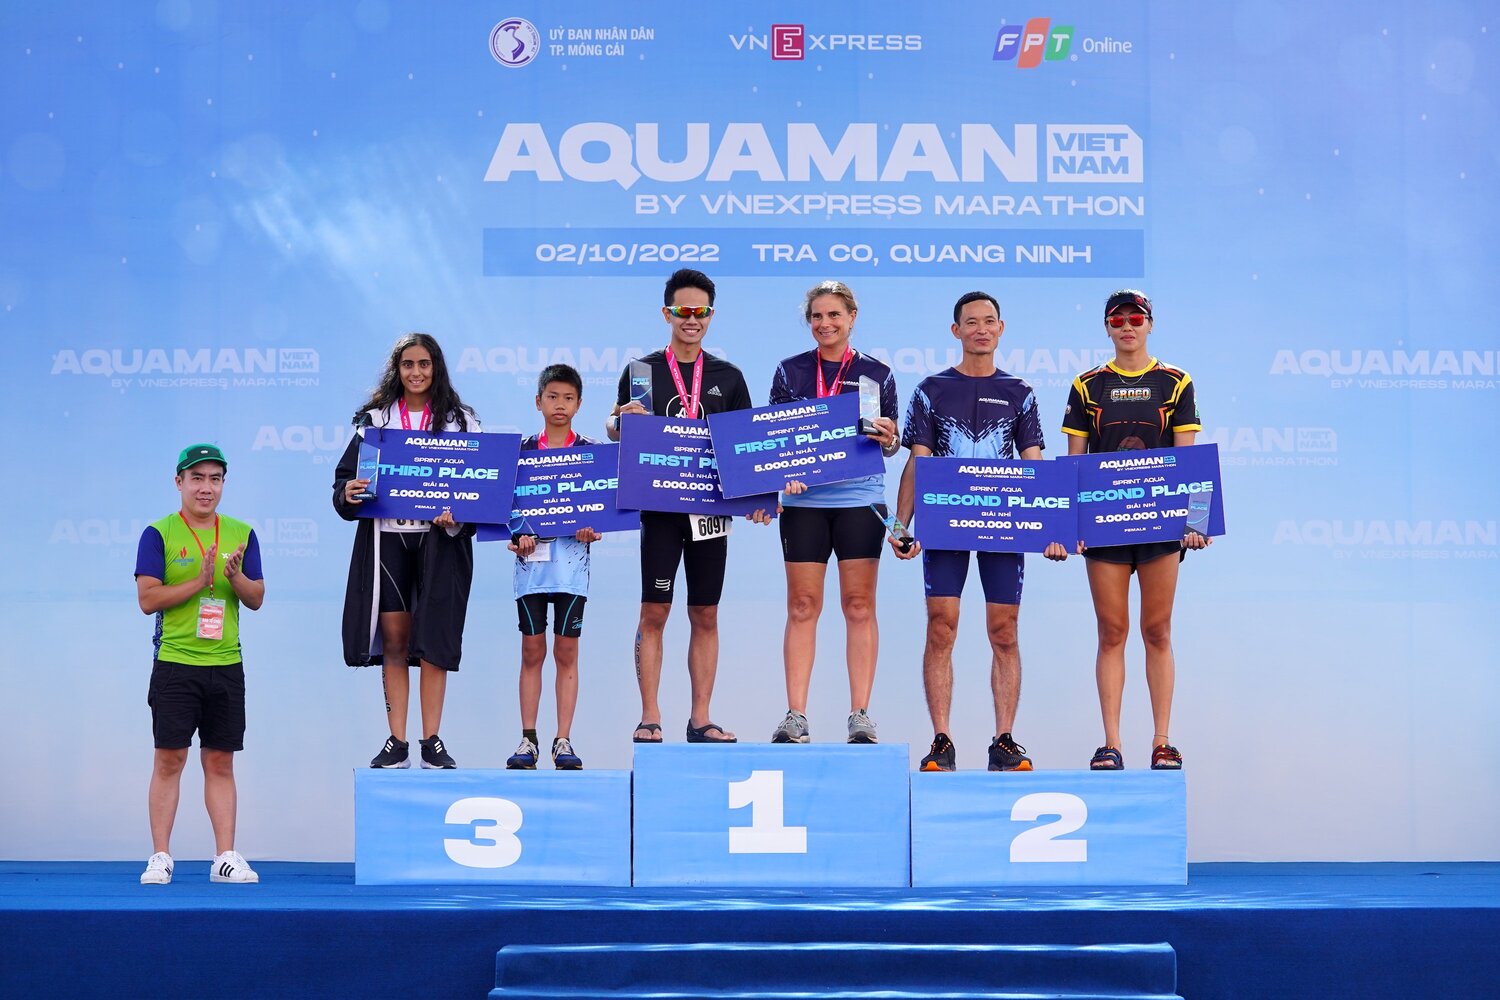 Aquaman Vietnam 2022 Competition